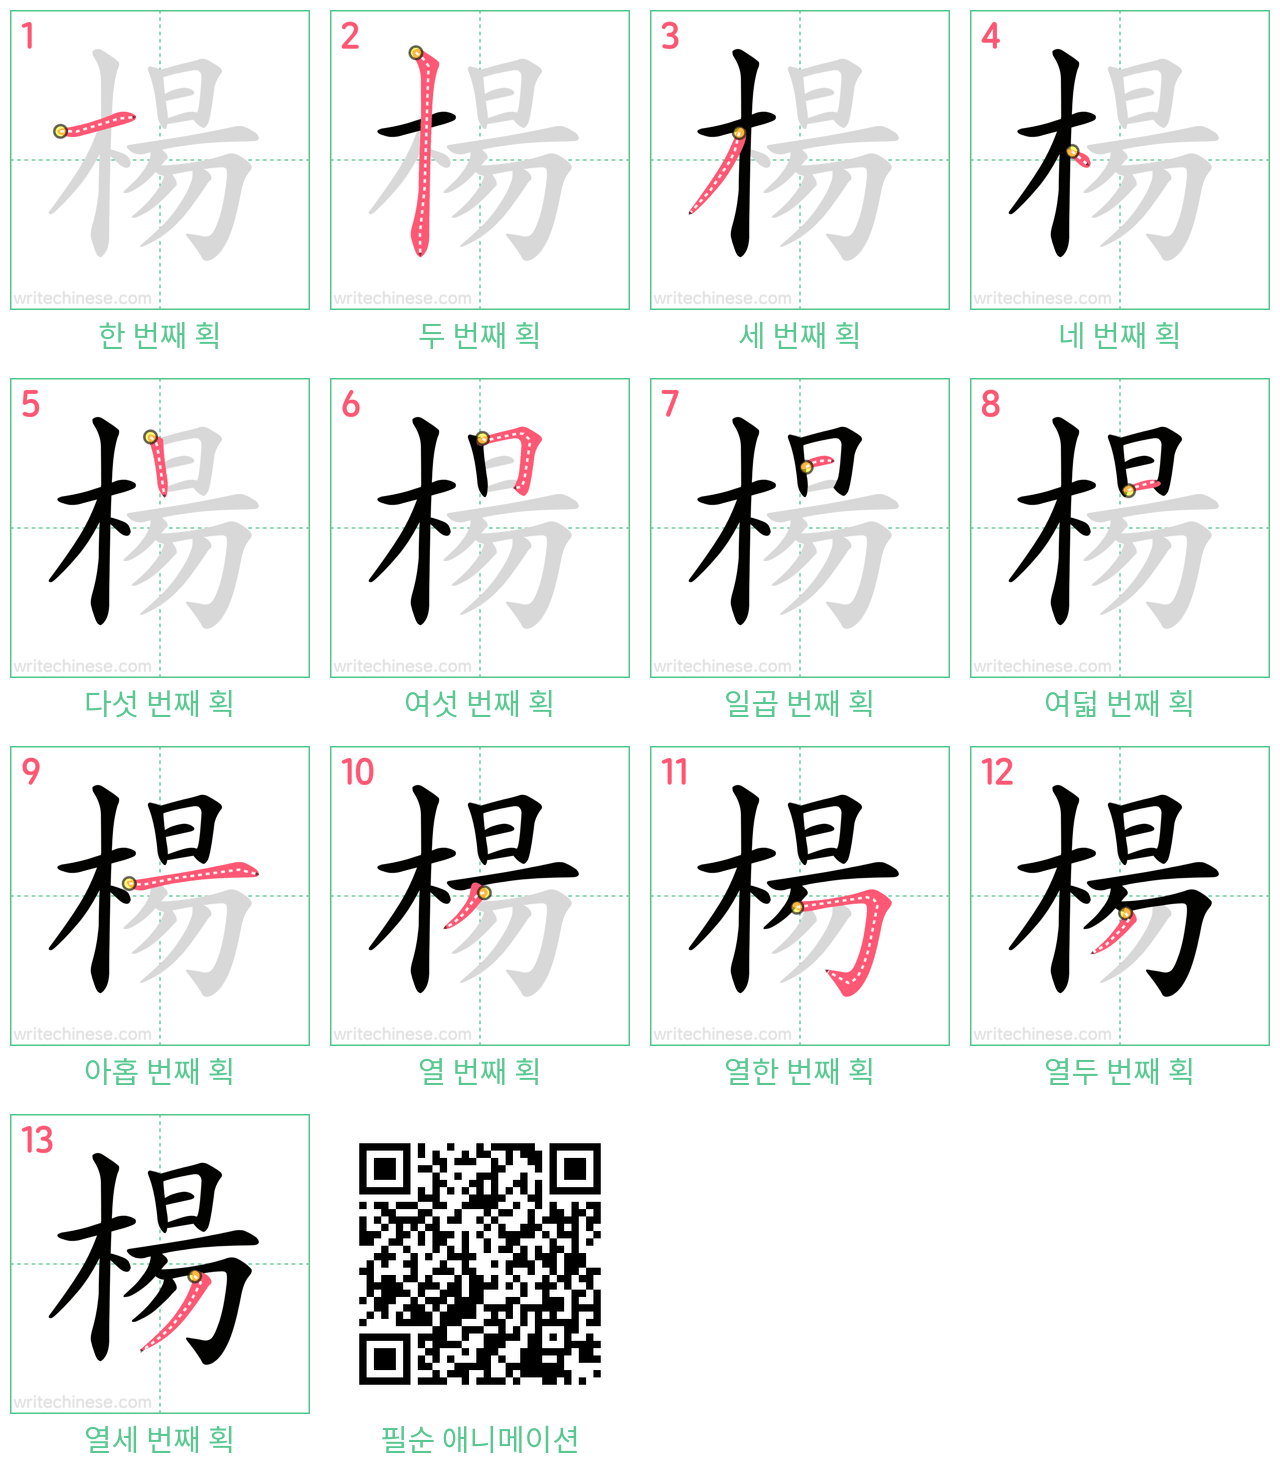 楊 step-by-step stroke order diagrams